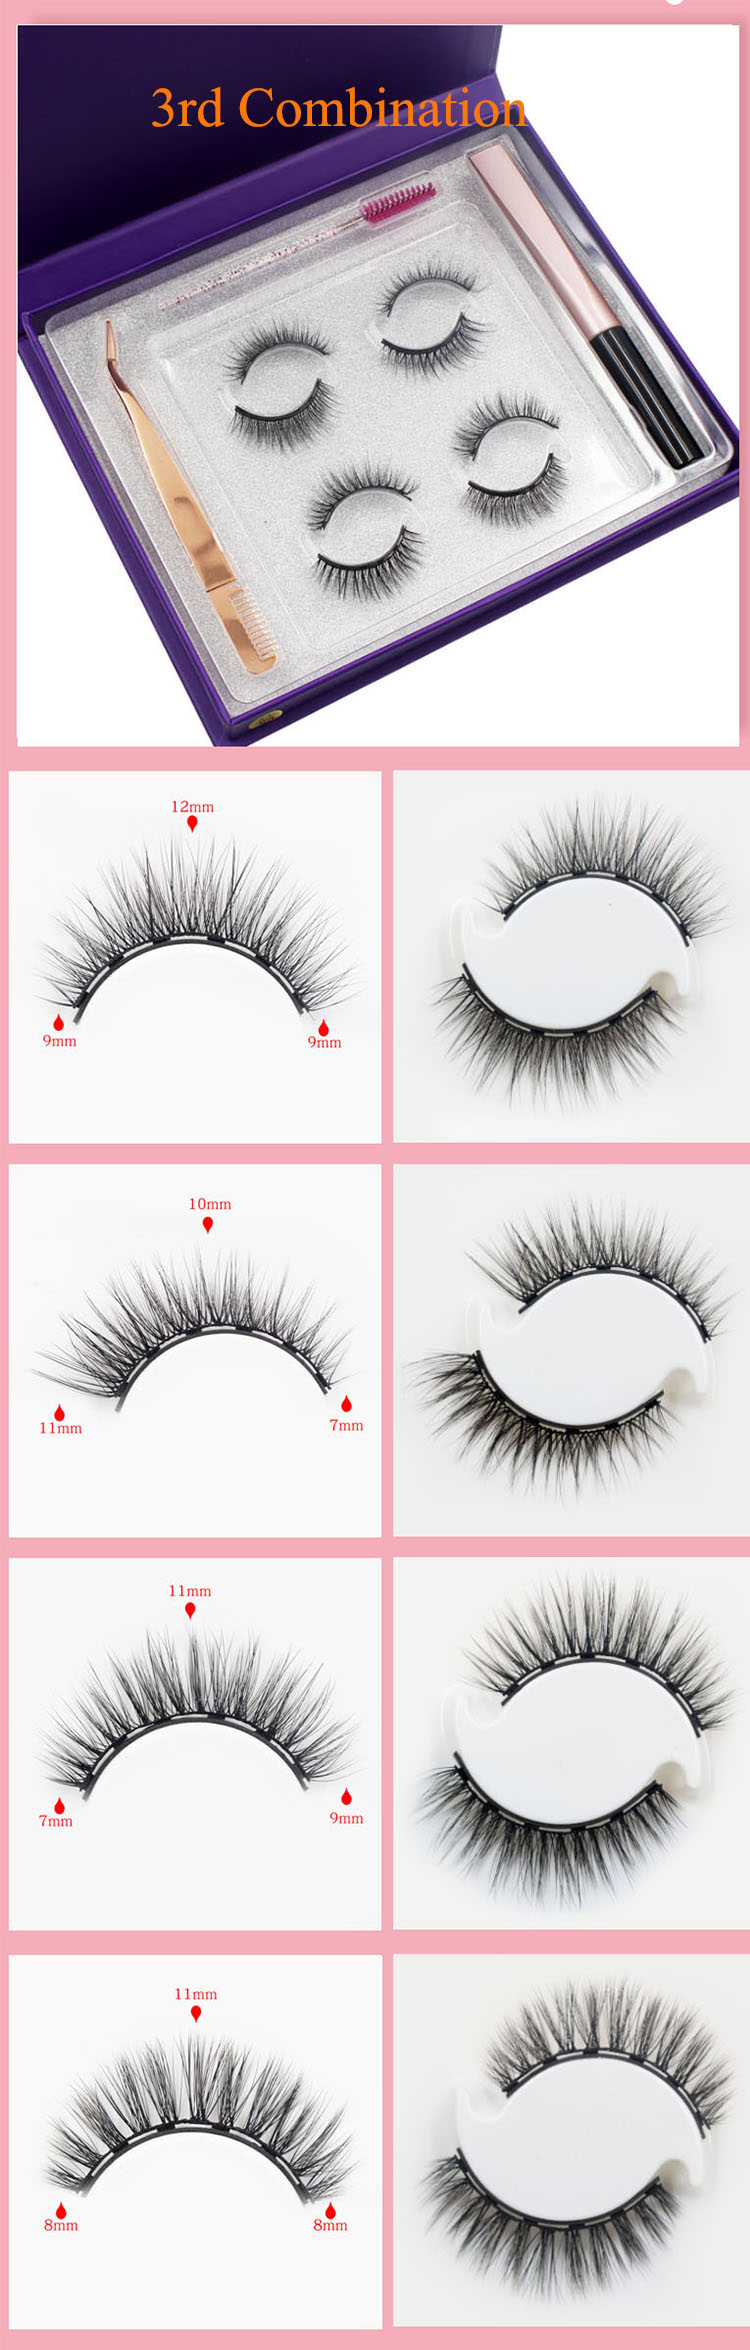 best-quality-luxury-faux-mink-eyelashes-lash-vendors.jpg